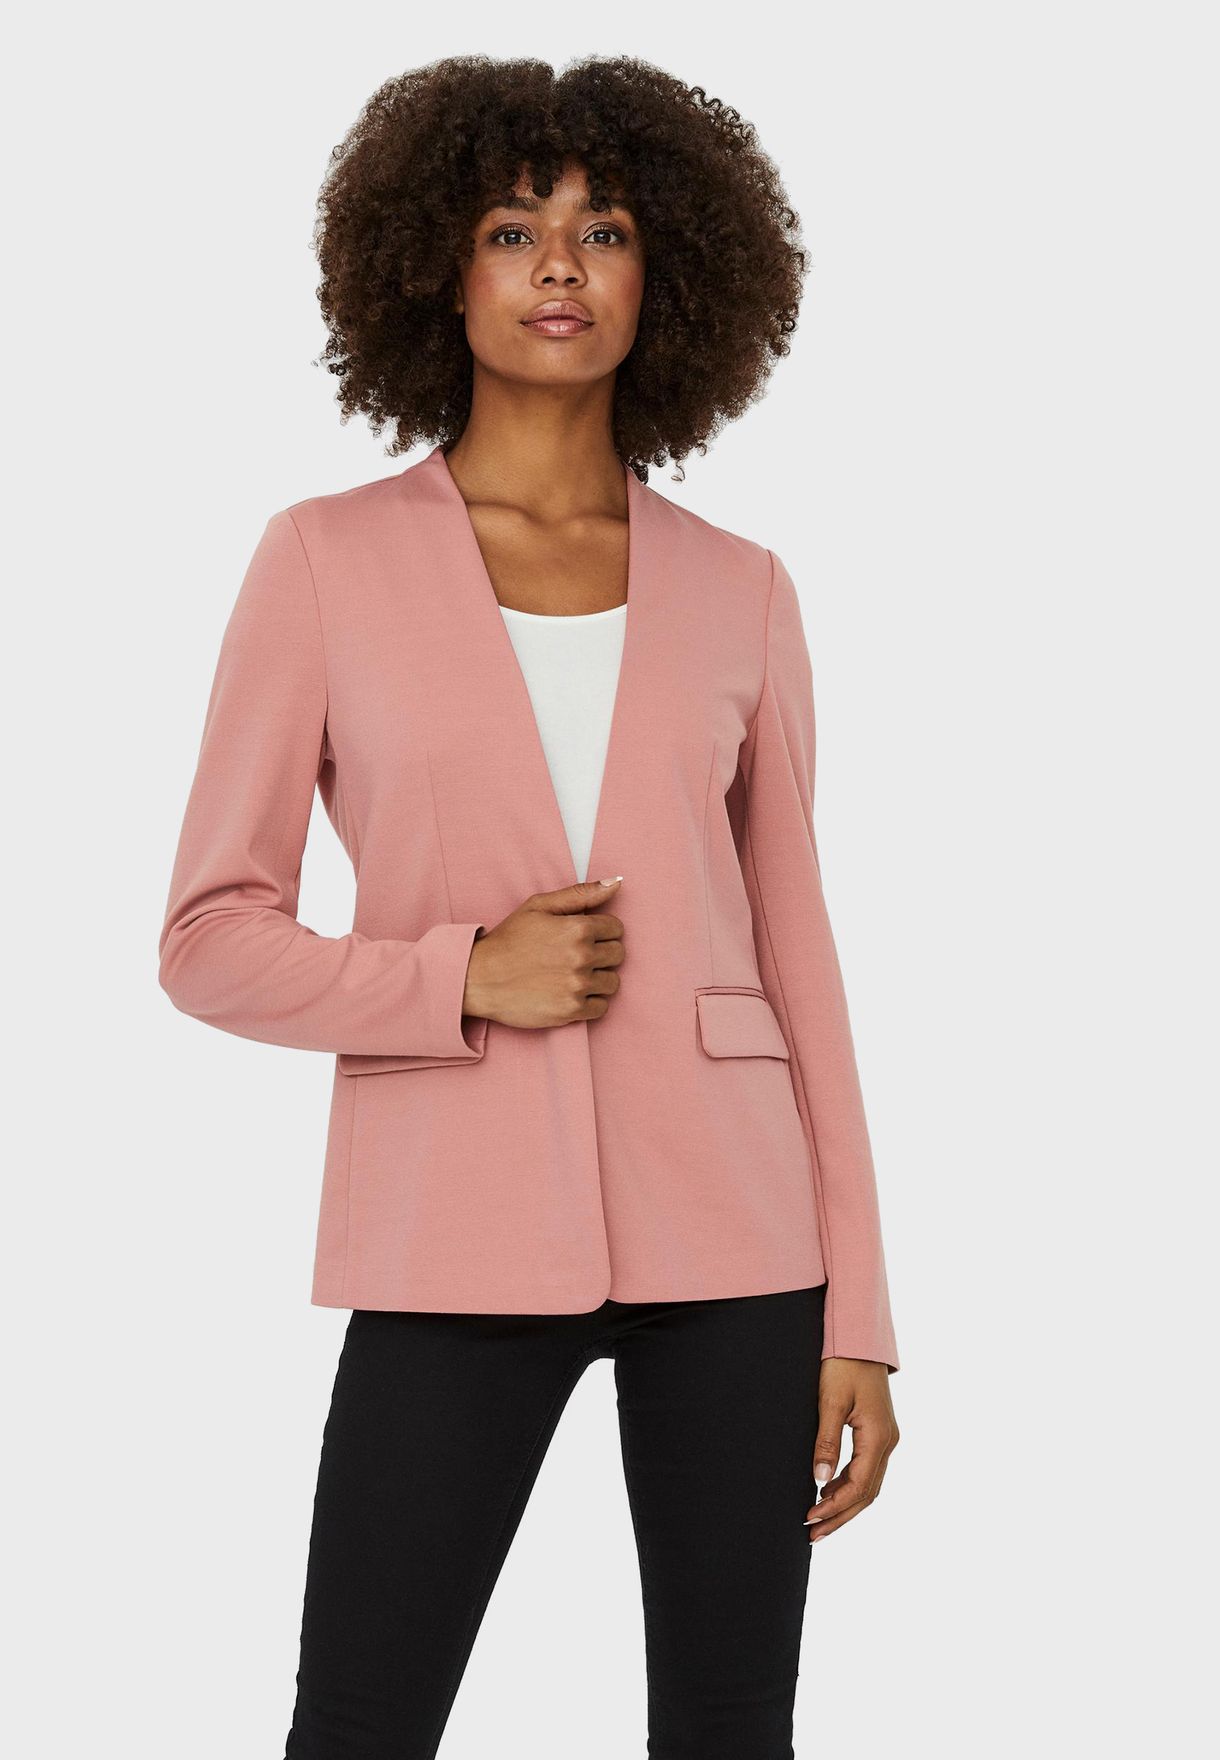 Skaldet Derfor Siege Buy Vero Moda pink Tailored Blazer for Women in MENA, Worldwide